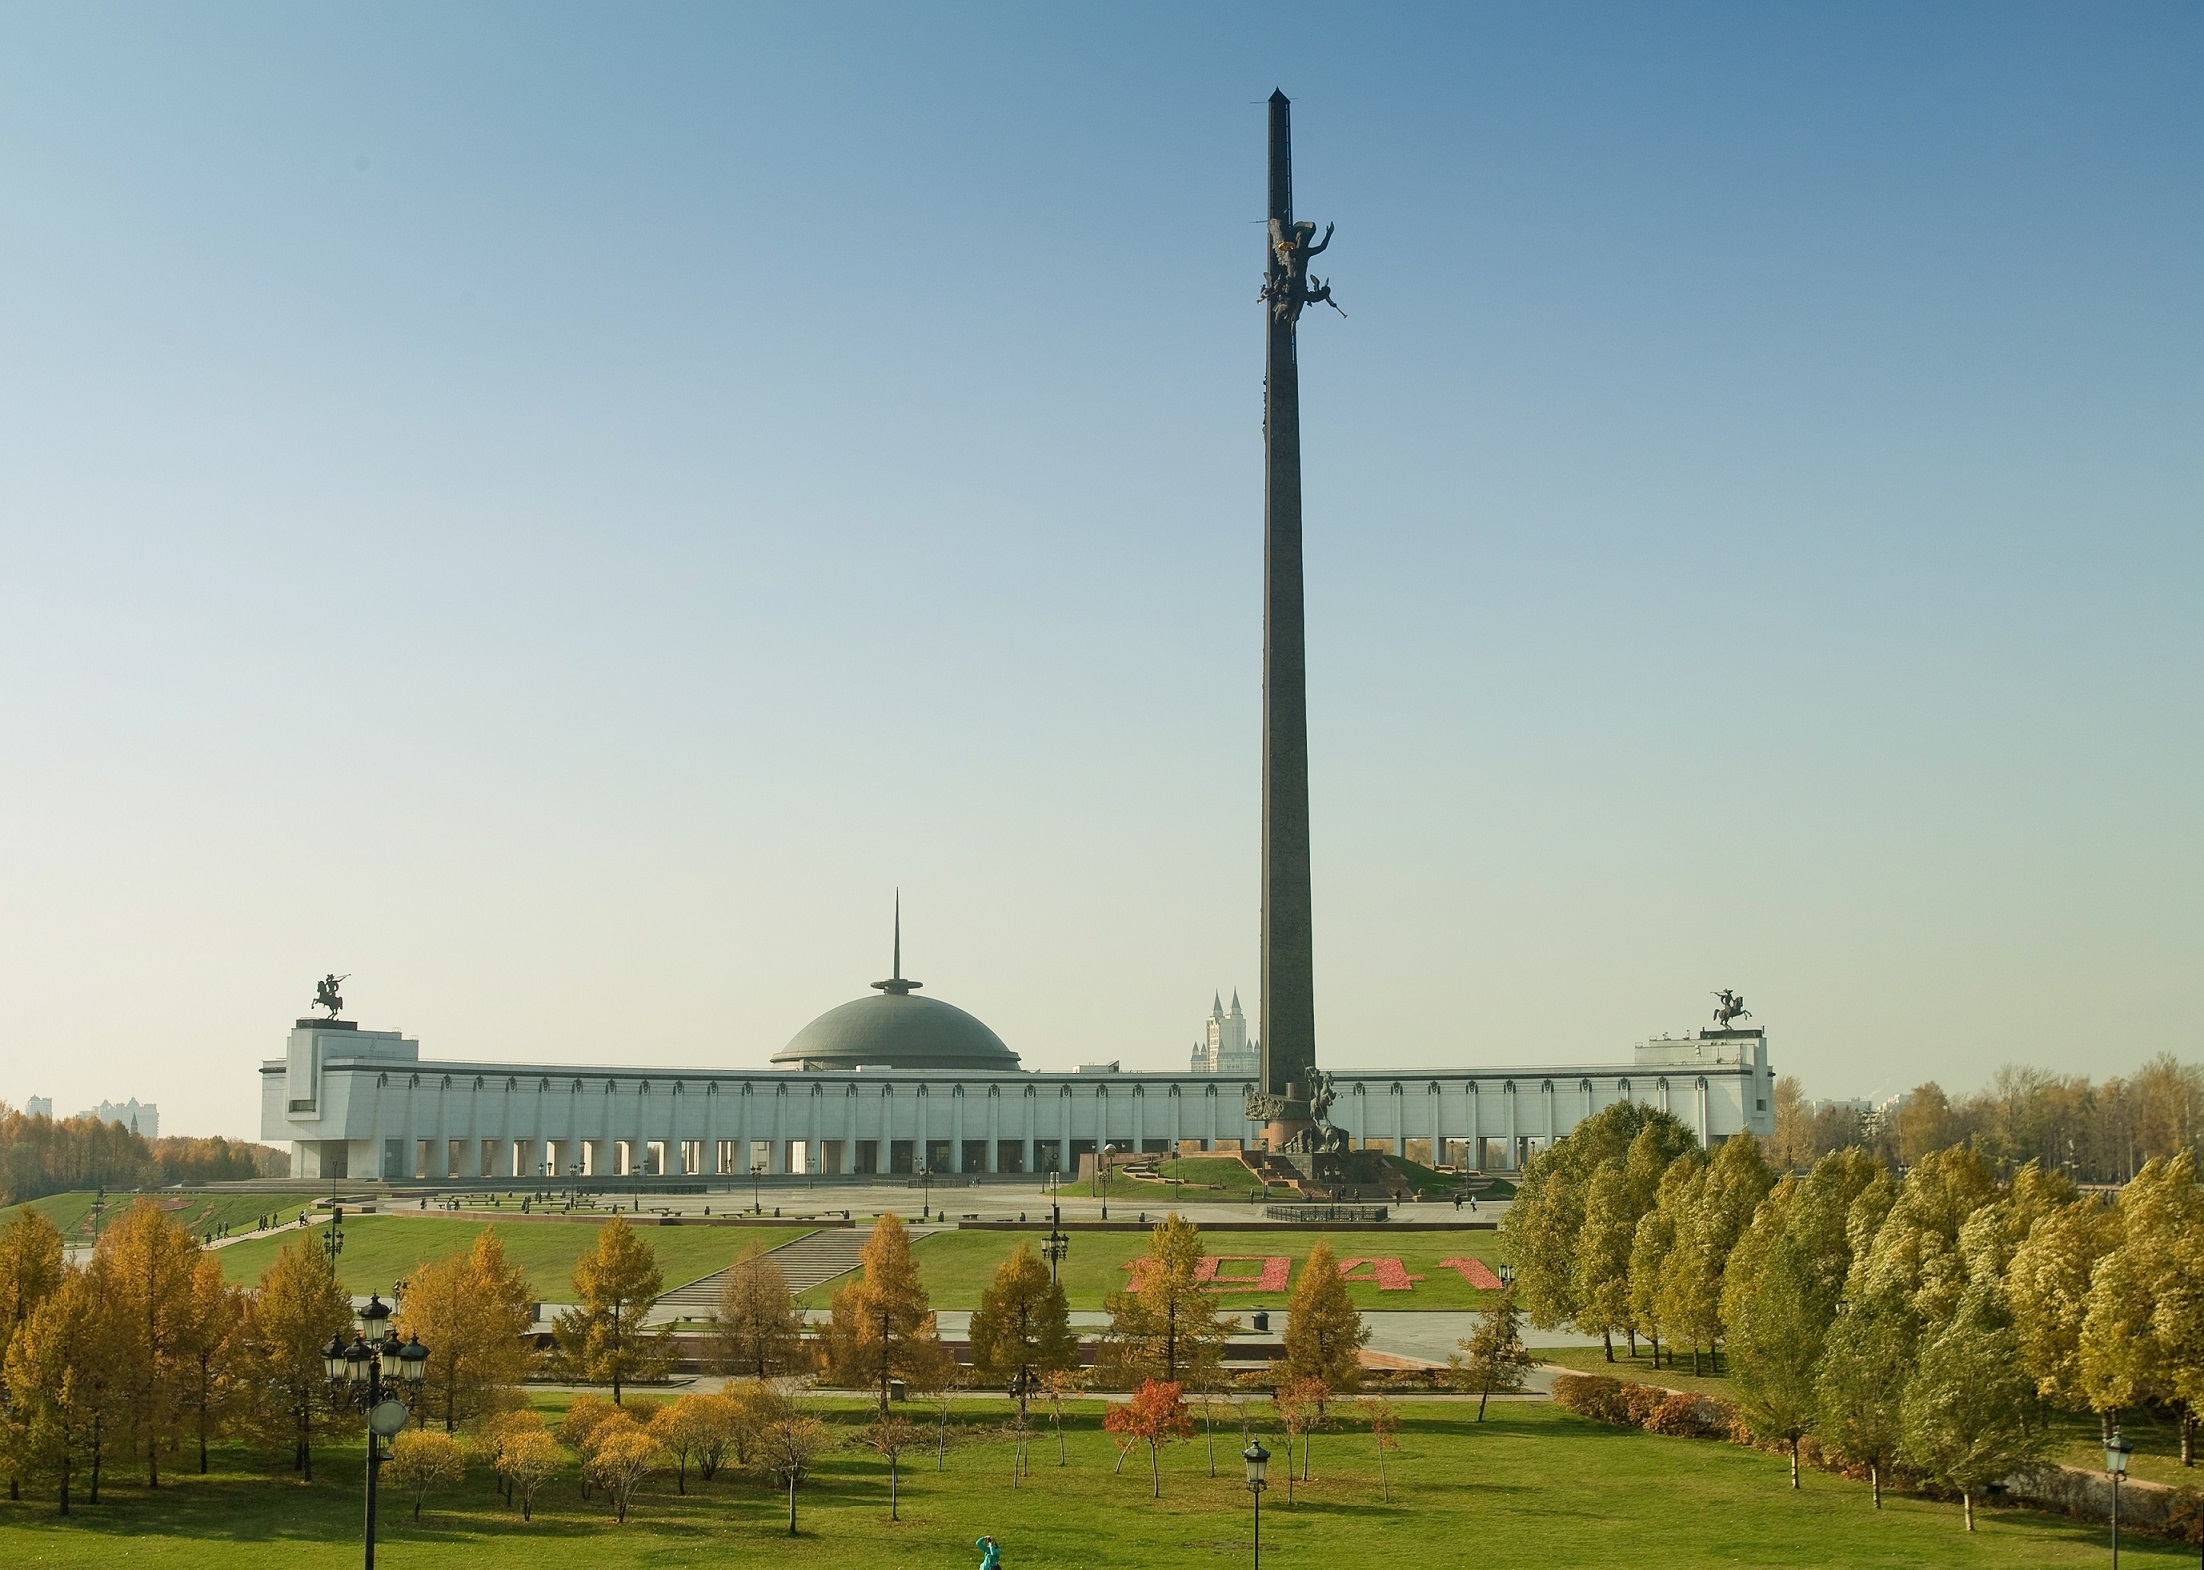 Центральный музей Великой Отечественной войны на Поклонной горе